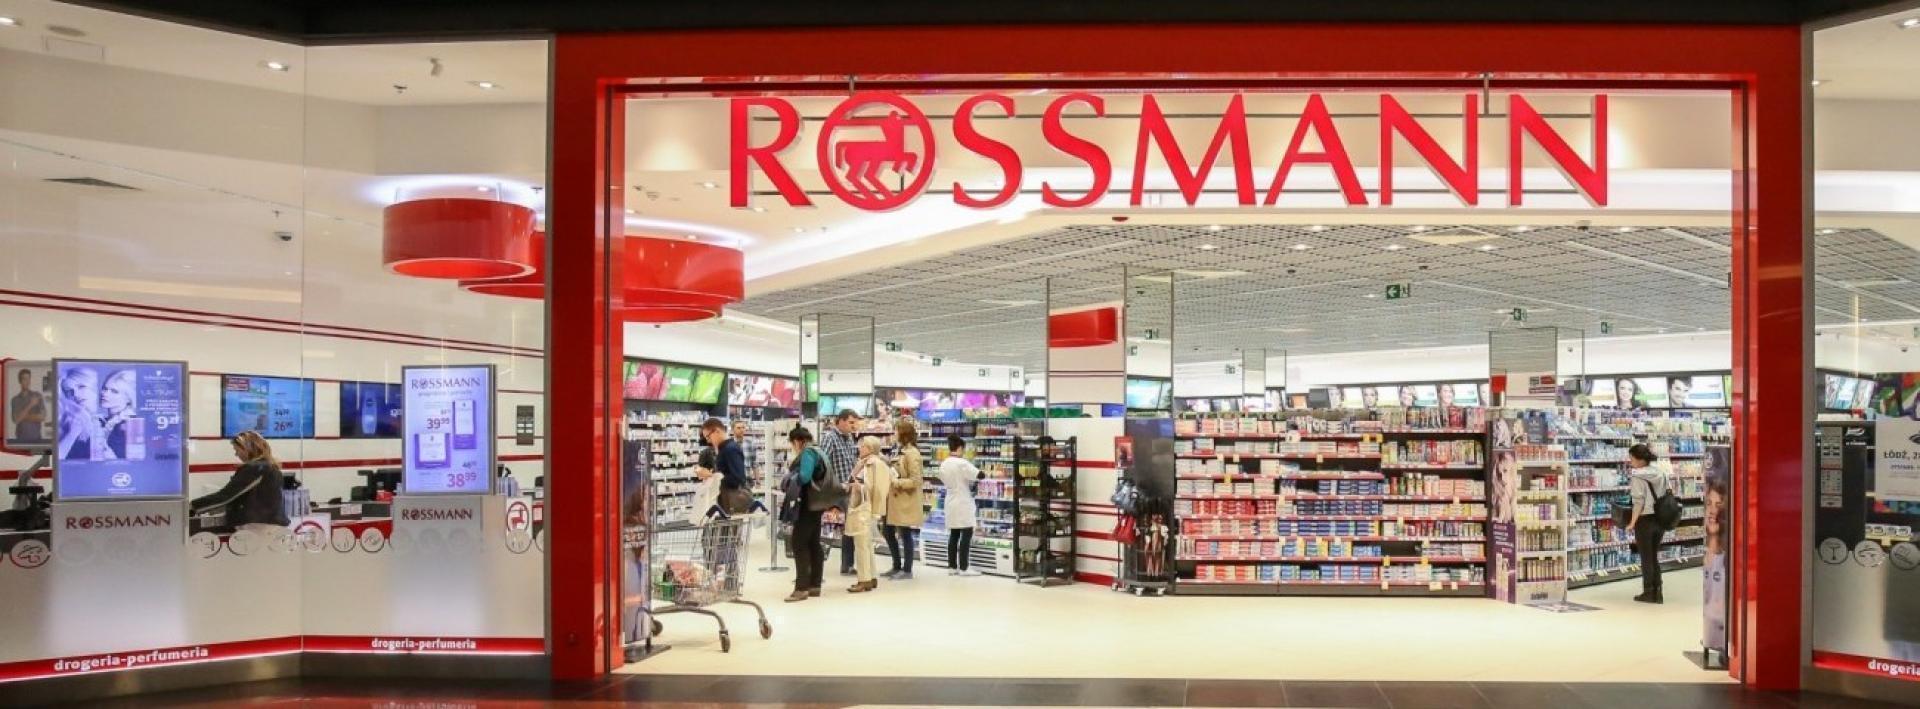 Rossmann absolutnym liderem wśród drogerii według analizy list zakupowych